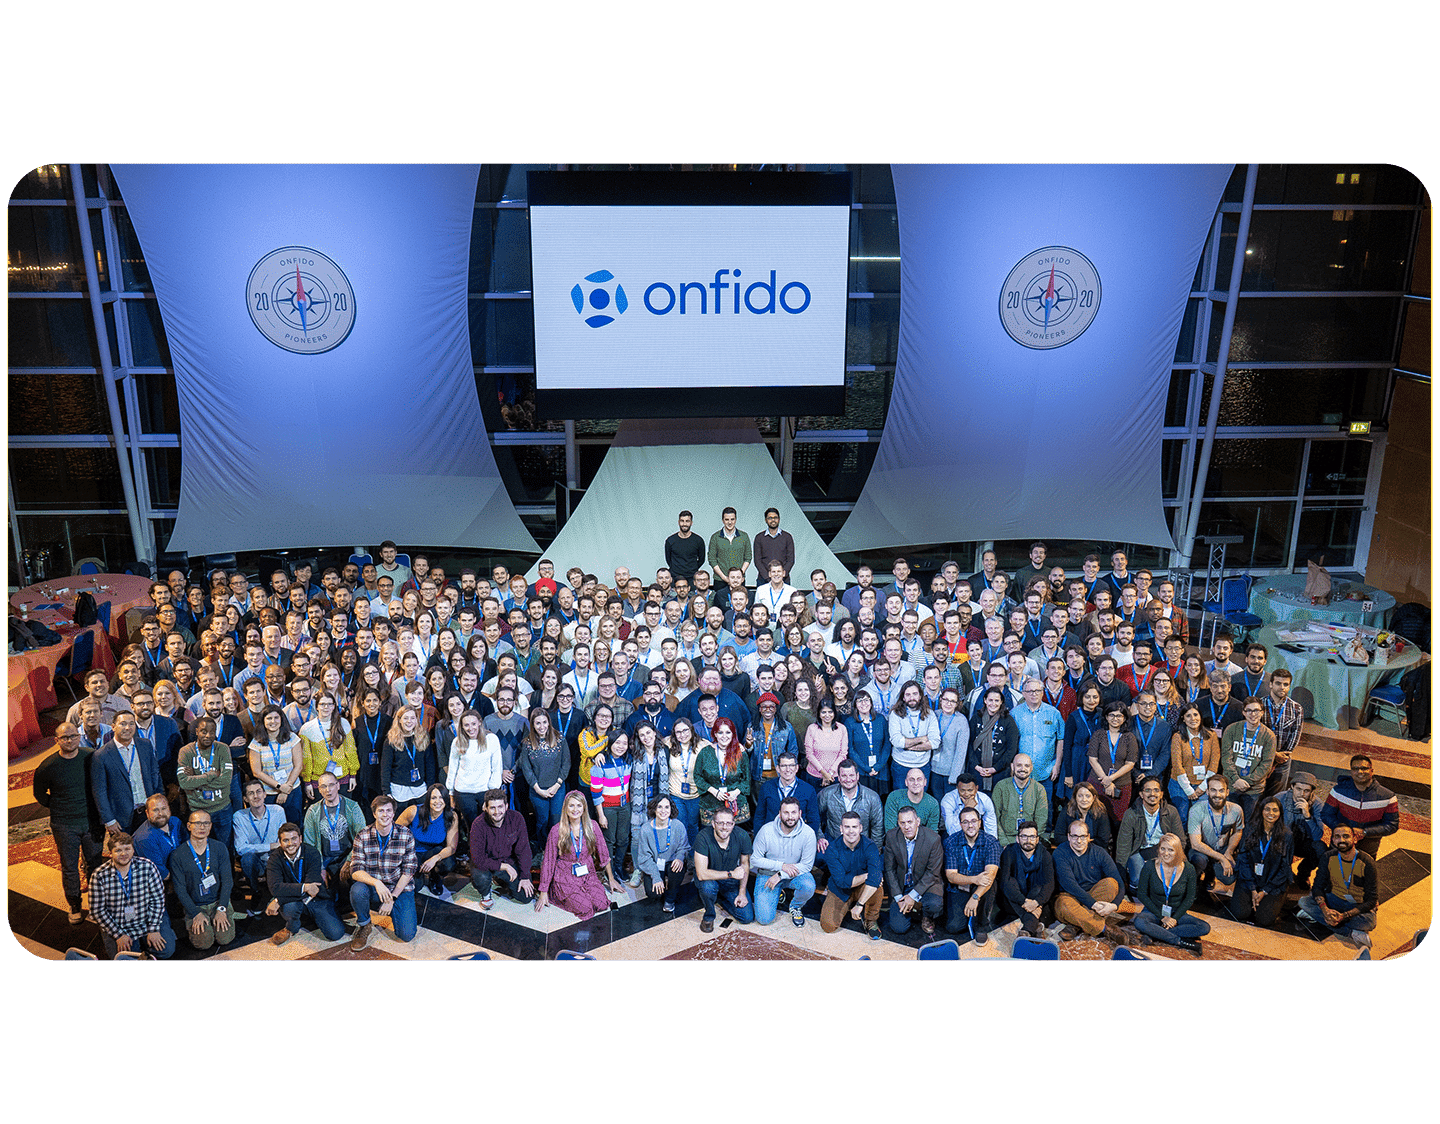 Une photo d'entreprise d'Onfido mettant en vedette des centaines d'employés.